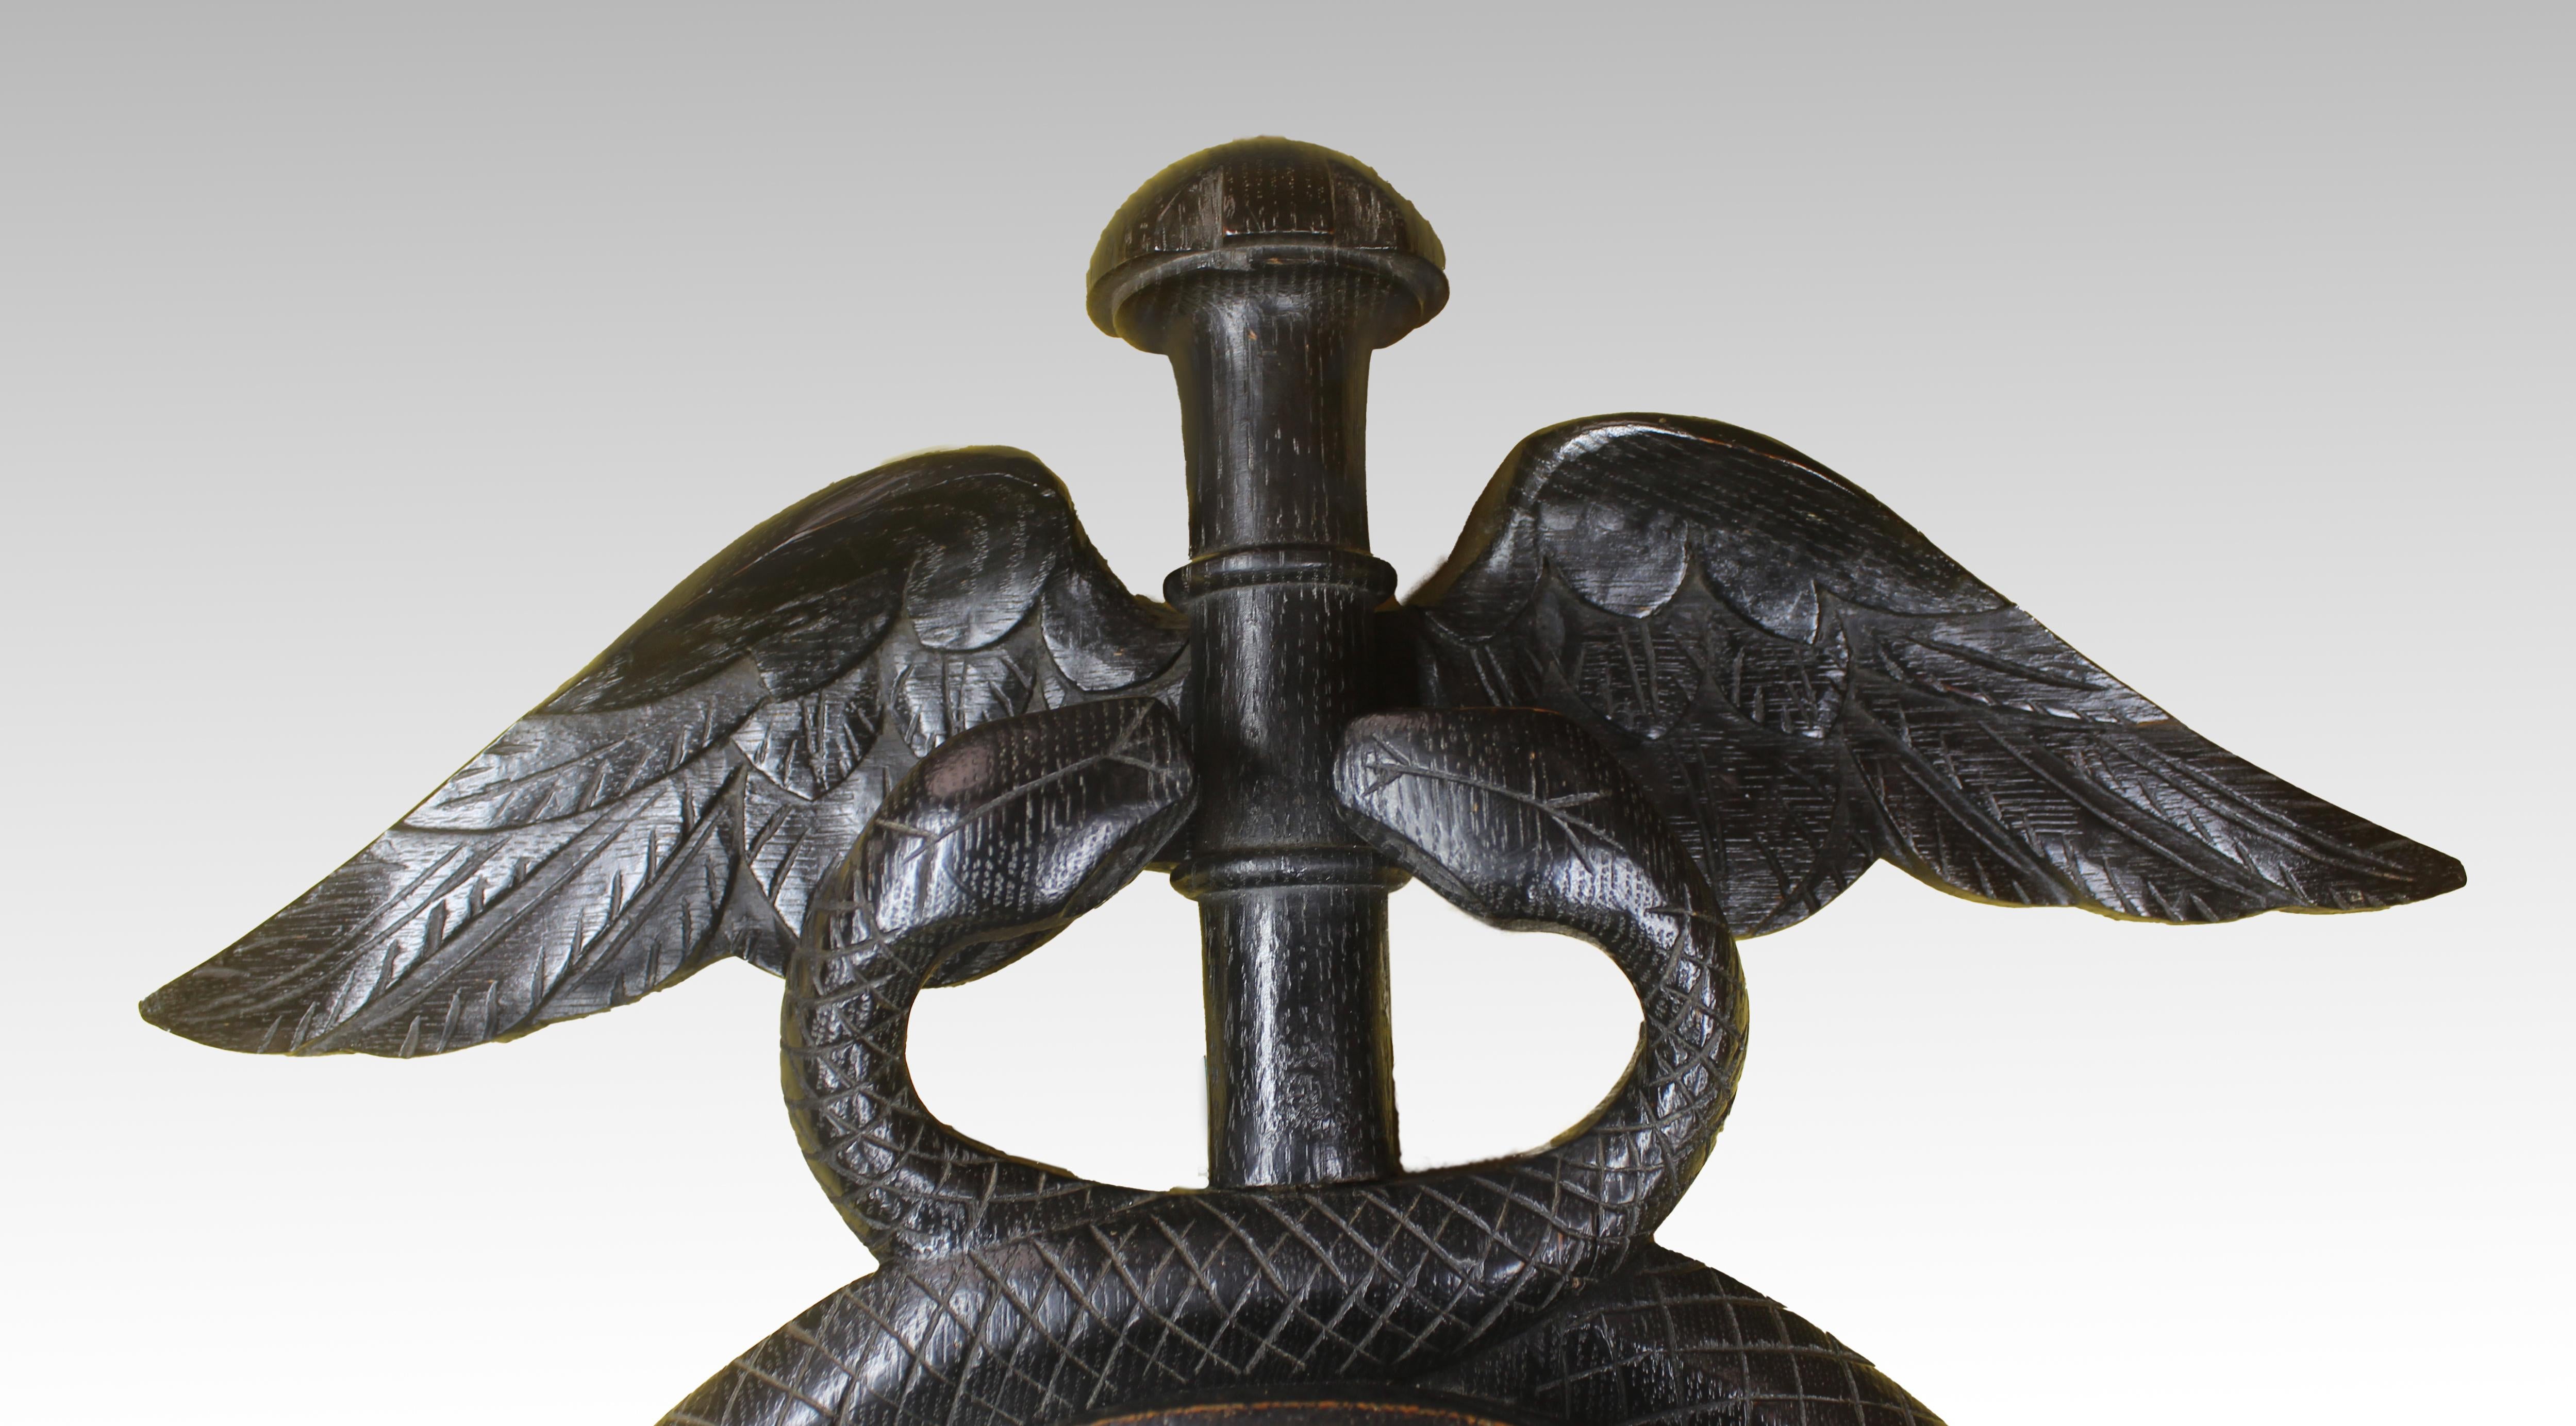 Baromètre anéroïde et mouvement d'horlogerie dans un boîtier inhabituel en chêne ébonisé en forme de Caducée (le bâton d'Hermès ou d'un héraut). Avec deux serpents entrelacés entourant les cadrans signés Joseph Davis & Co sur le baromètre.

Le